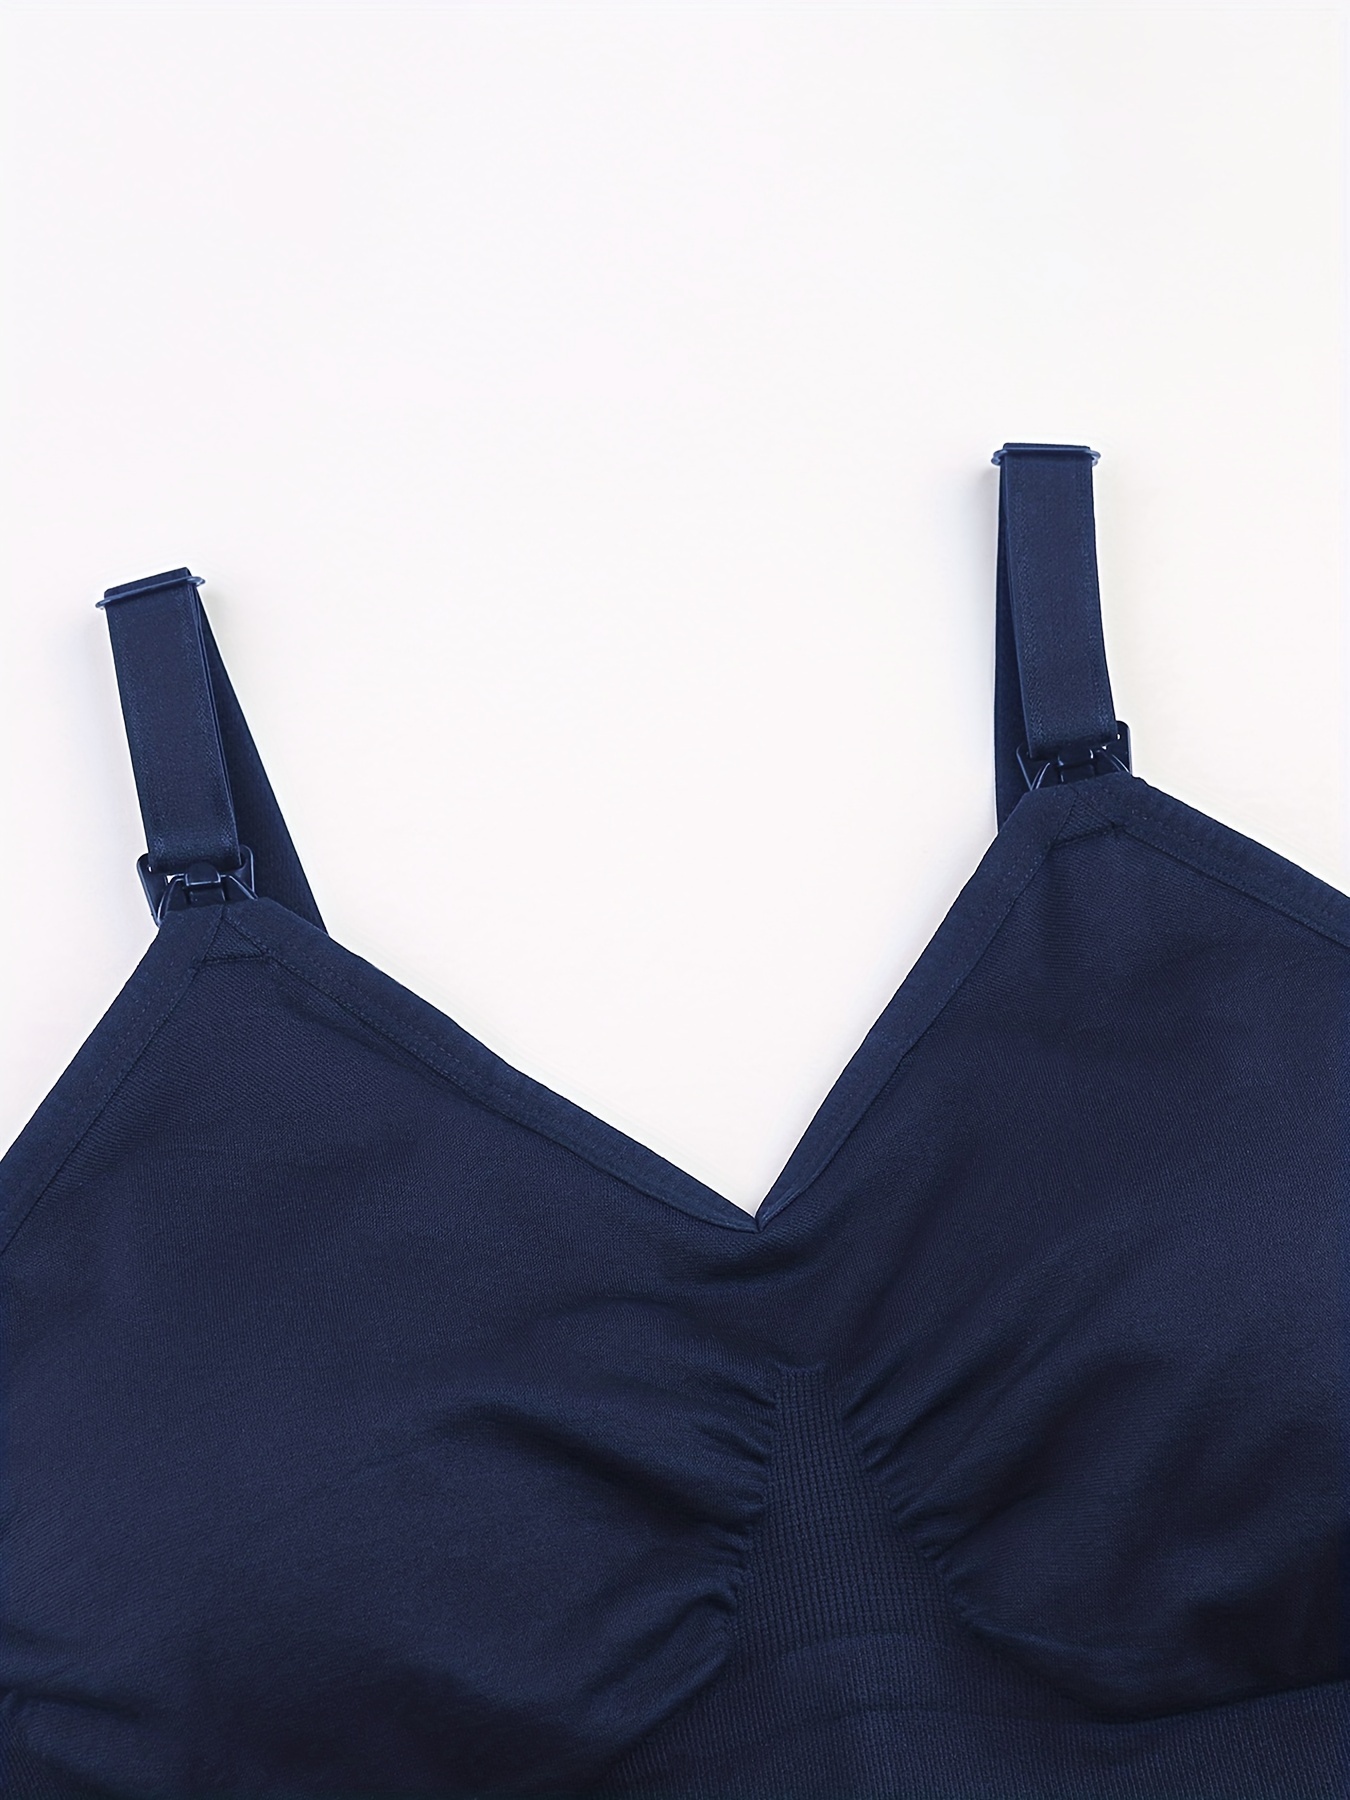 Padded Bra Vest, Women's Modal top Vest Women's Camisole Built-in Bra Gym  wear 2 pcs,Navy Blue,XL